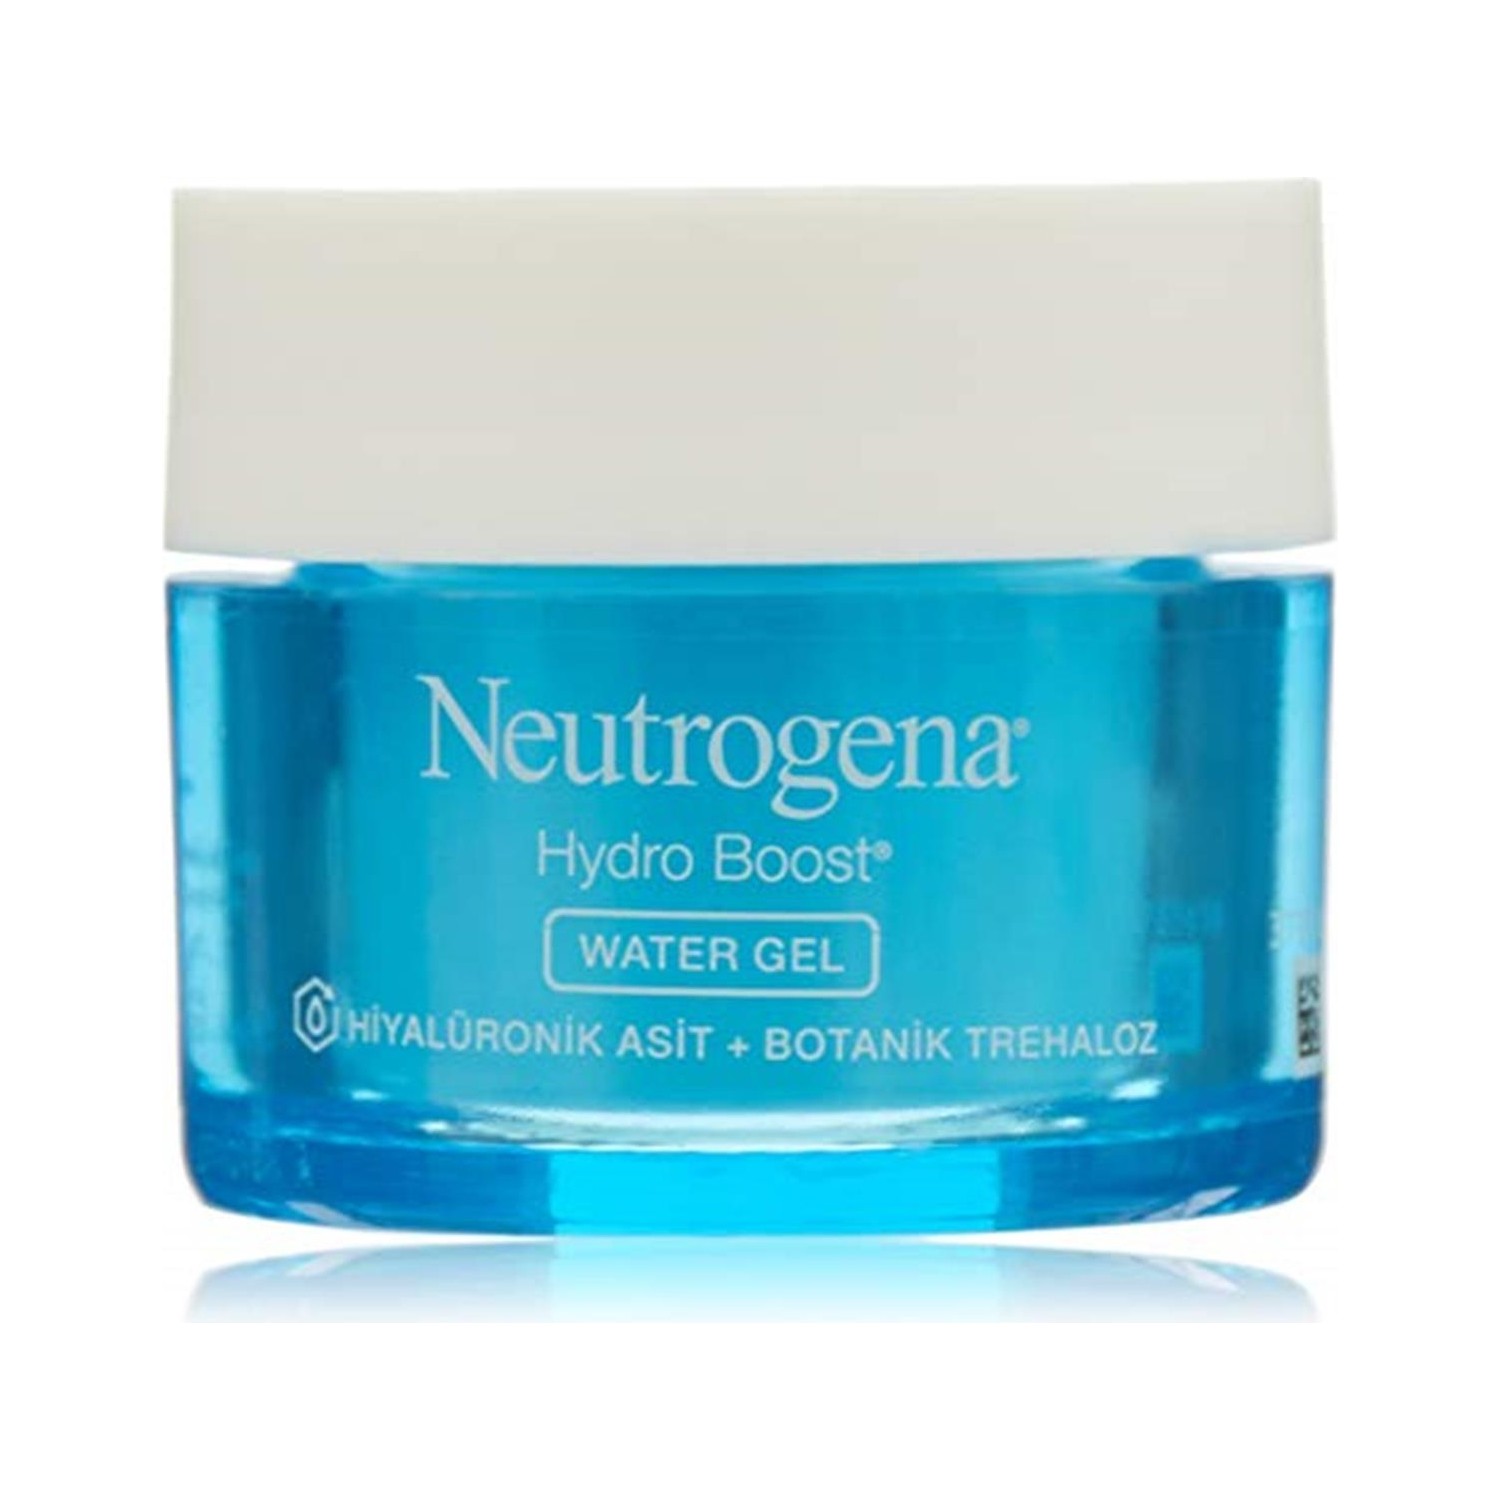 Гель увлажняющий Neutrogena Hydro Boost Water Gel для нормальной кожи, 50 мл гель увлажняющий neutrogena hydro boost water gel для нормальной кожи 50 мл